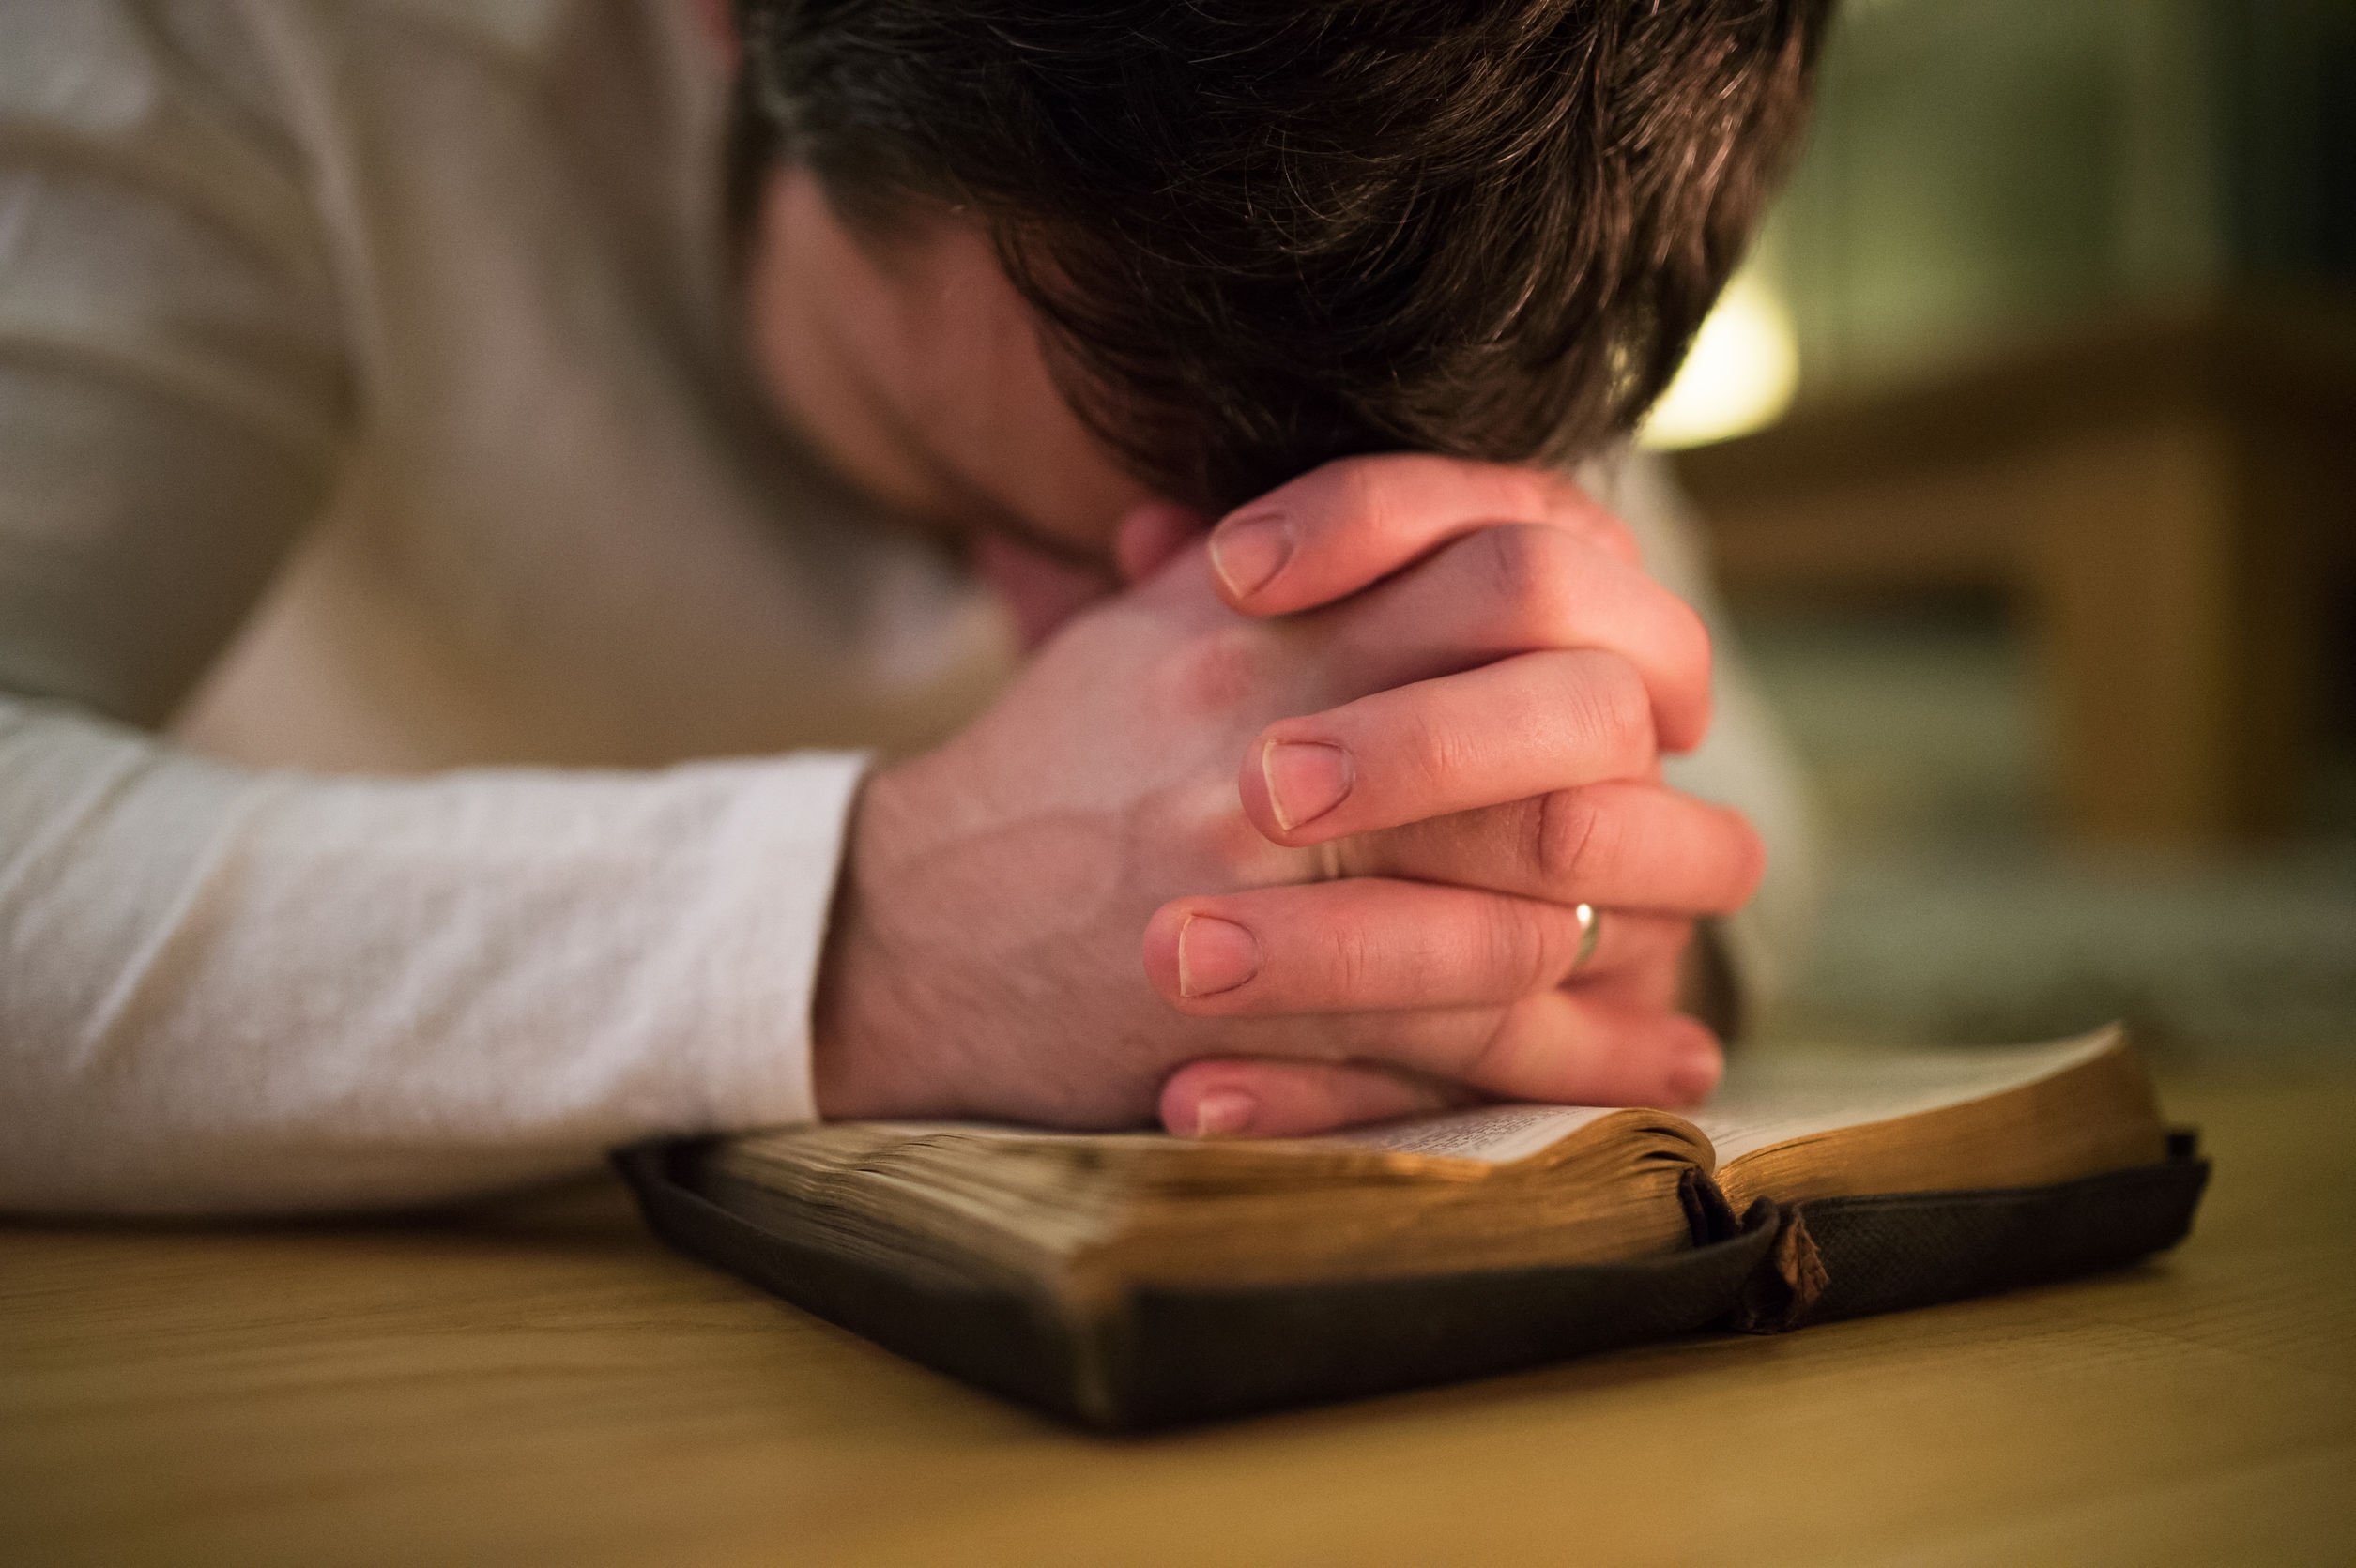 Homem jovem as mãos entrelaçadas apoiando em uma bíblia aberta, e sua cabeça baixa se apoia em suas mãos.